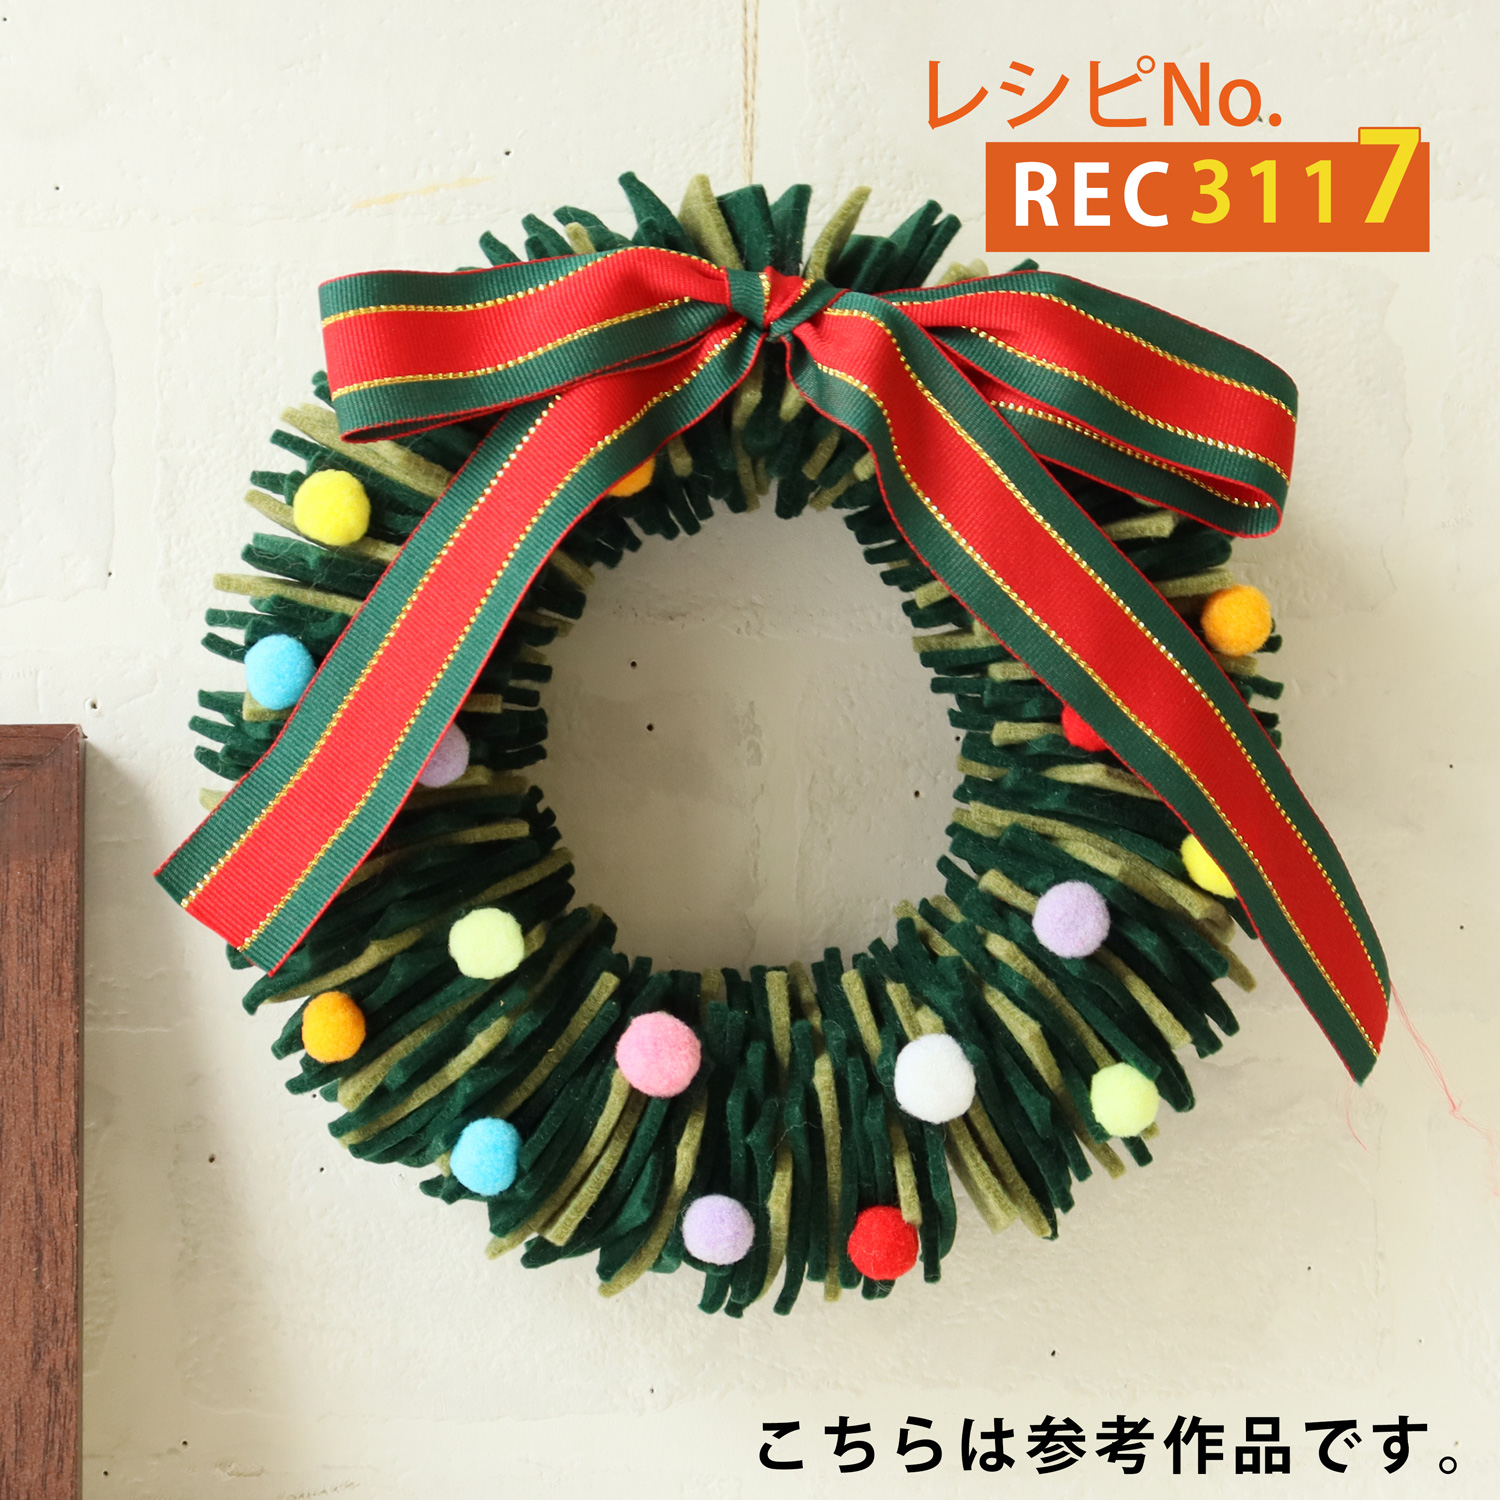 REC3117 Felt Christmas wreath (pcs)